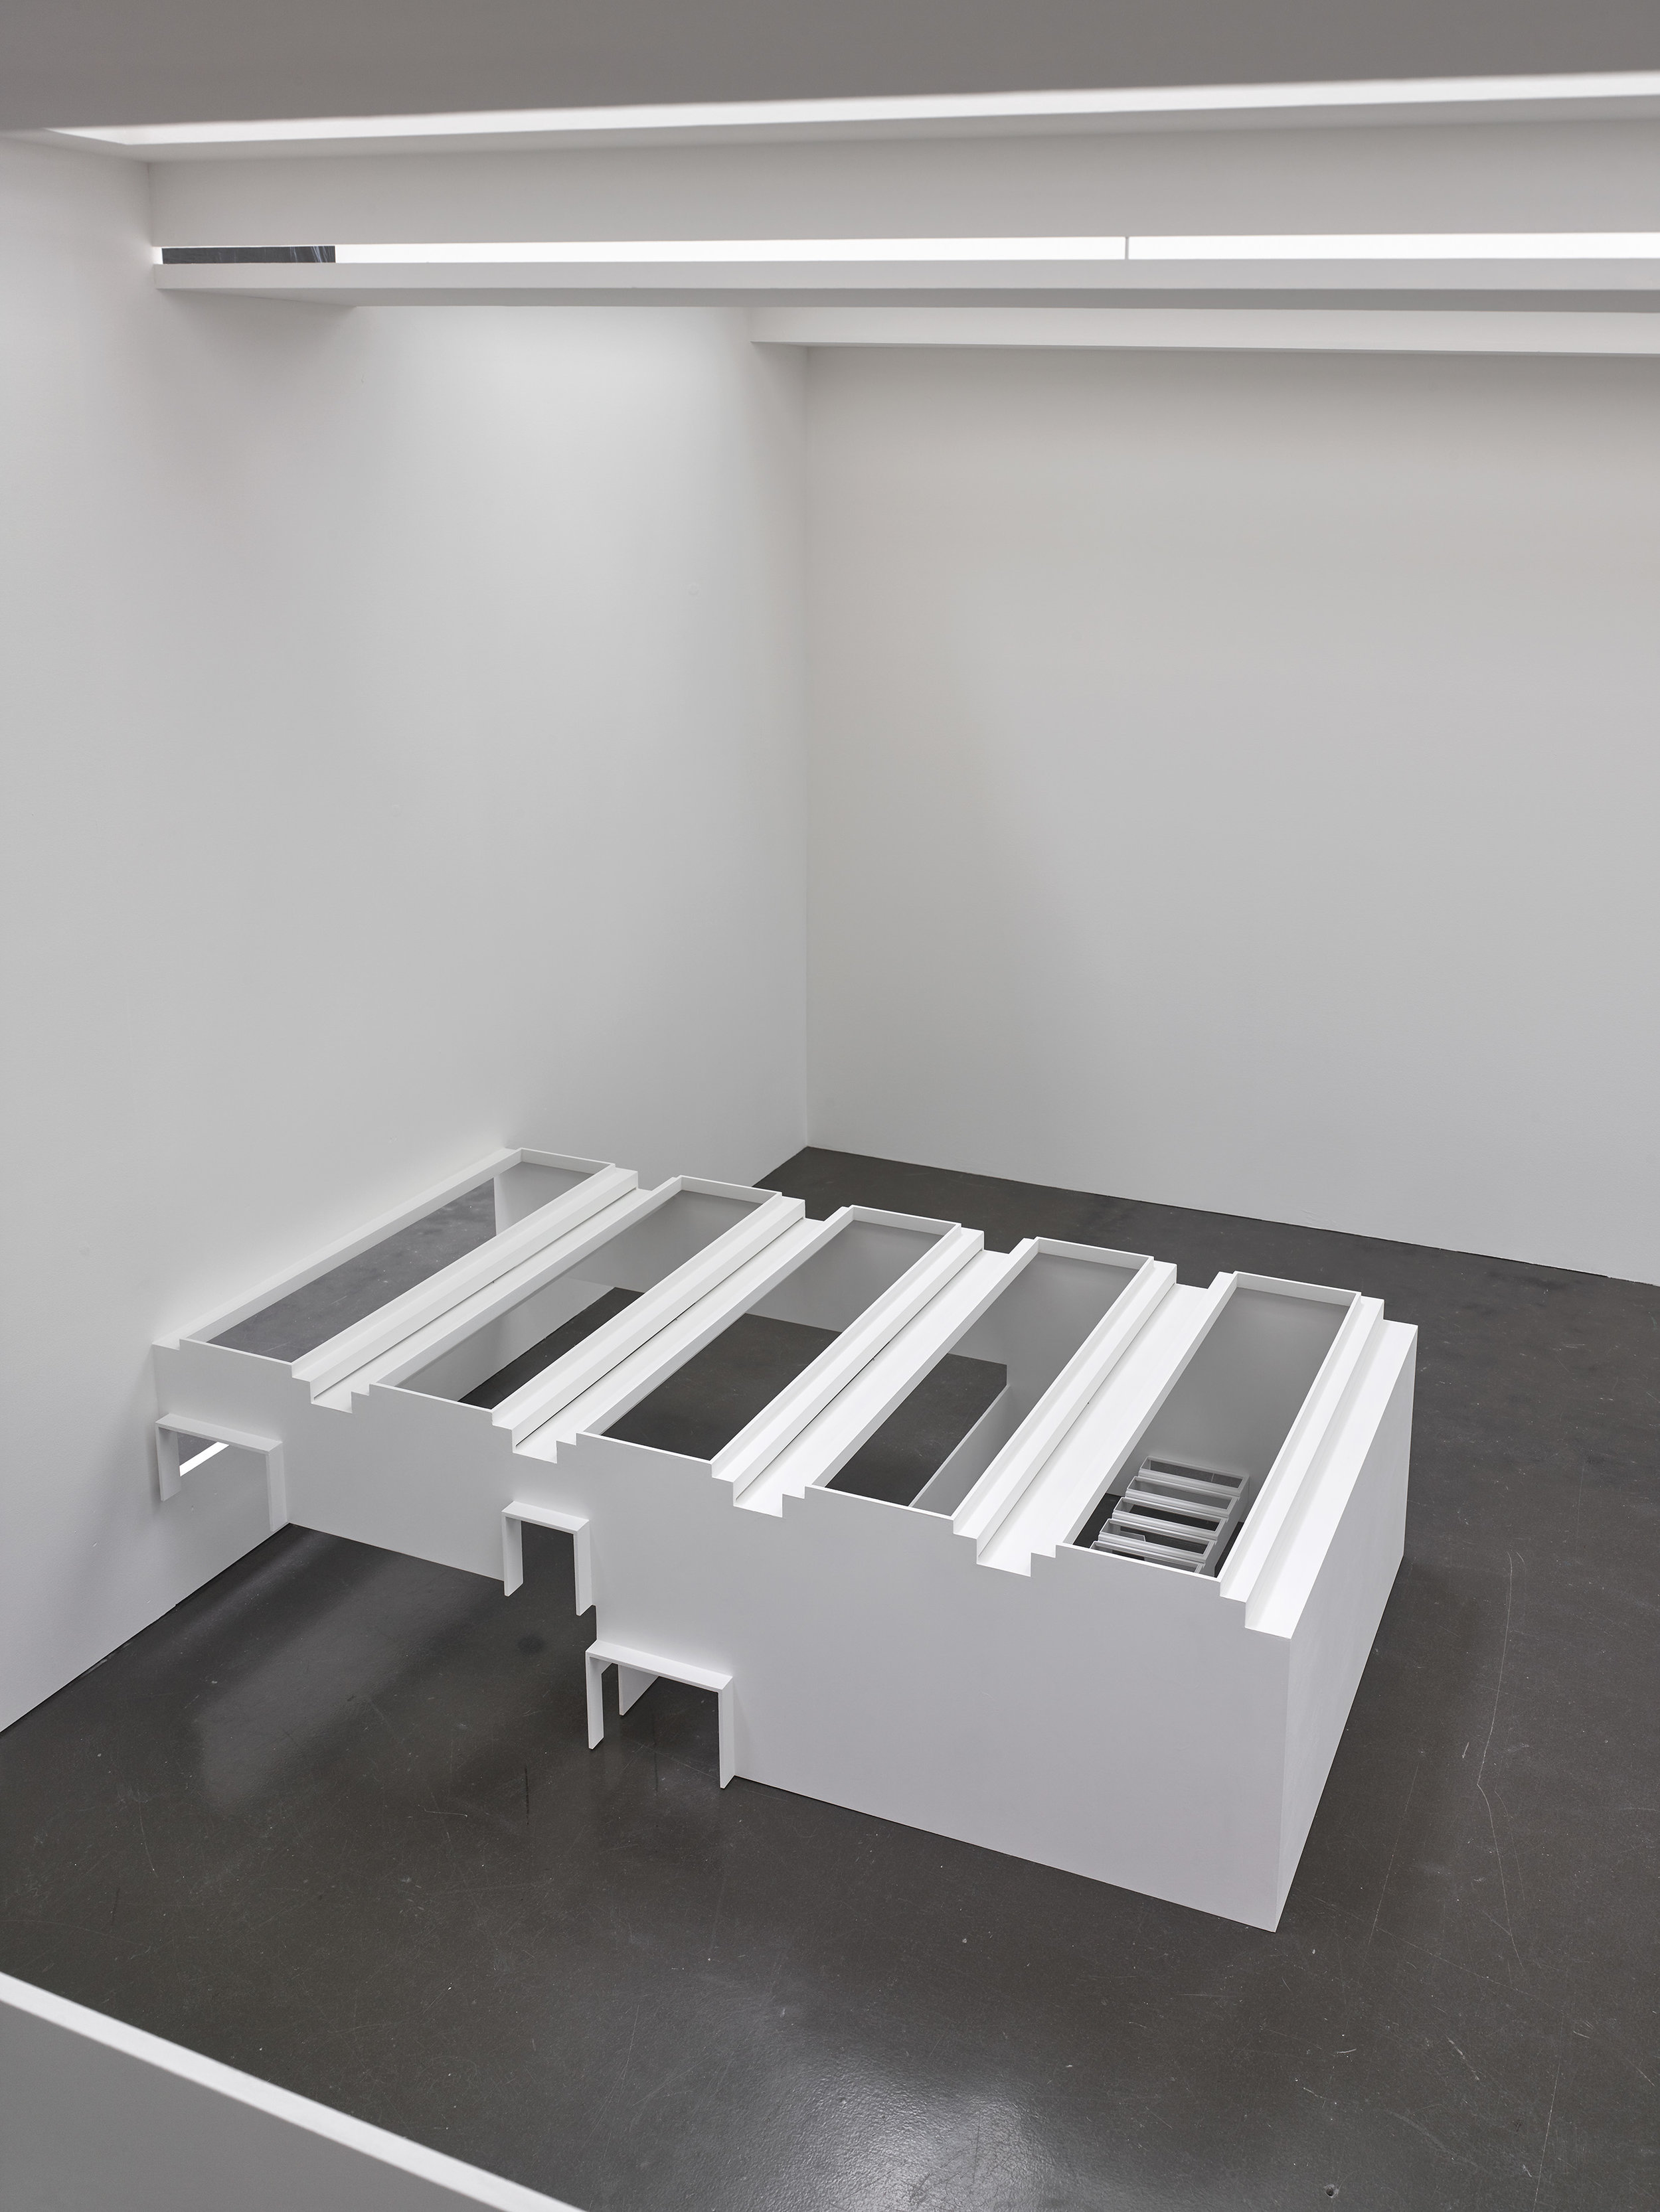  replica, 2019, Installationsansicht Kunsthalle Düsseldorf, Foto: Achim Kukulies 